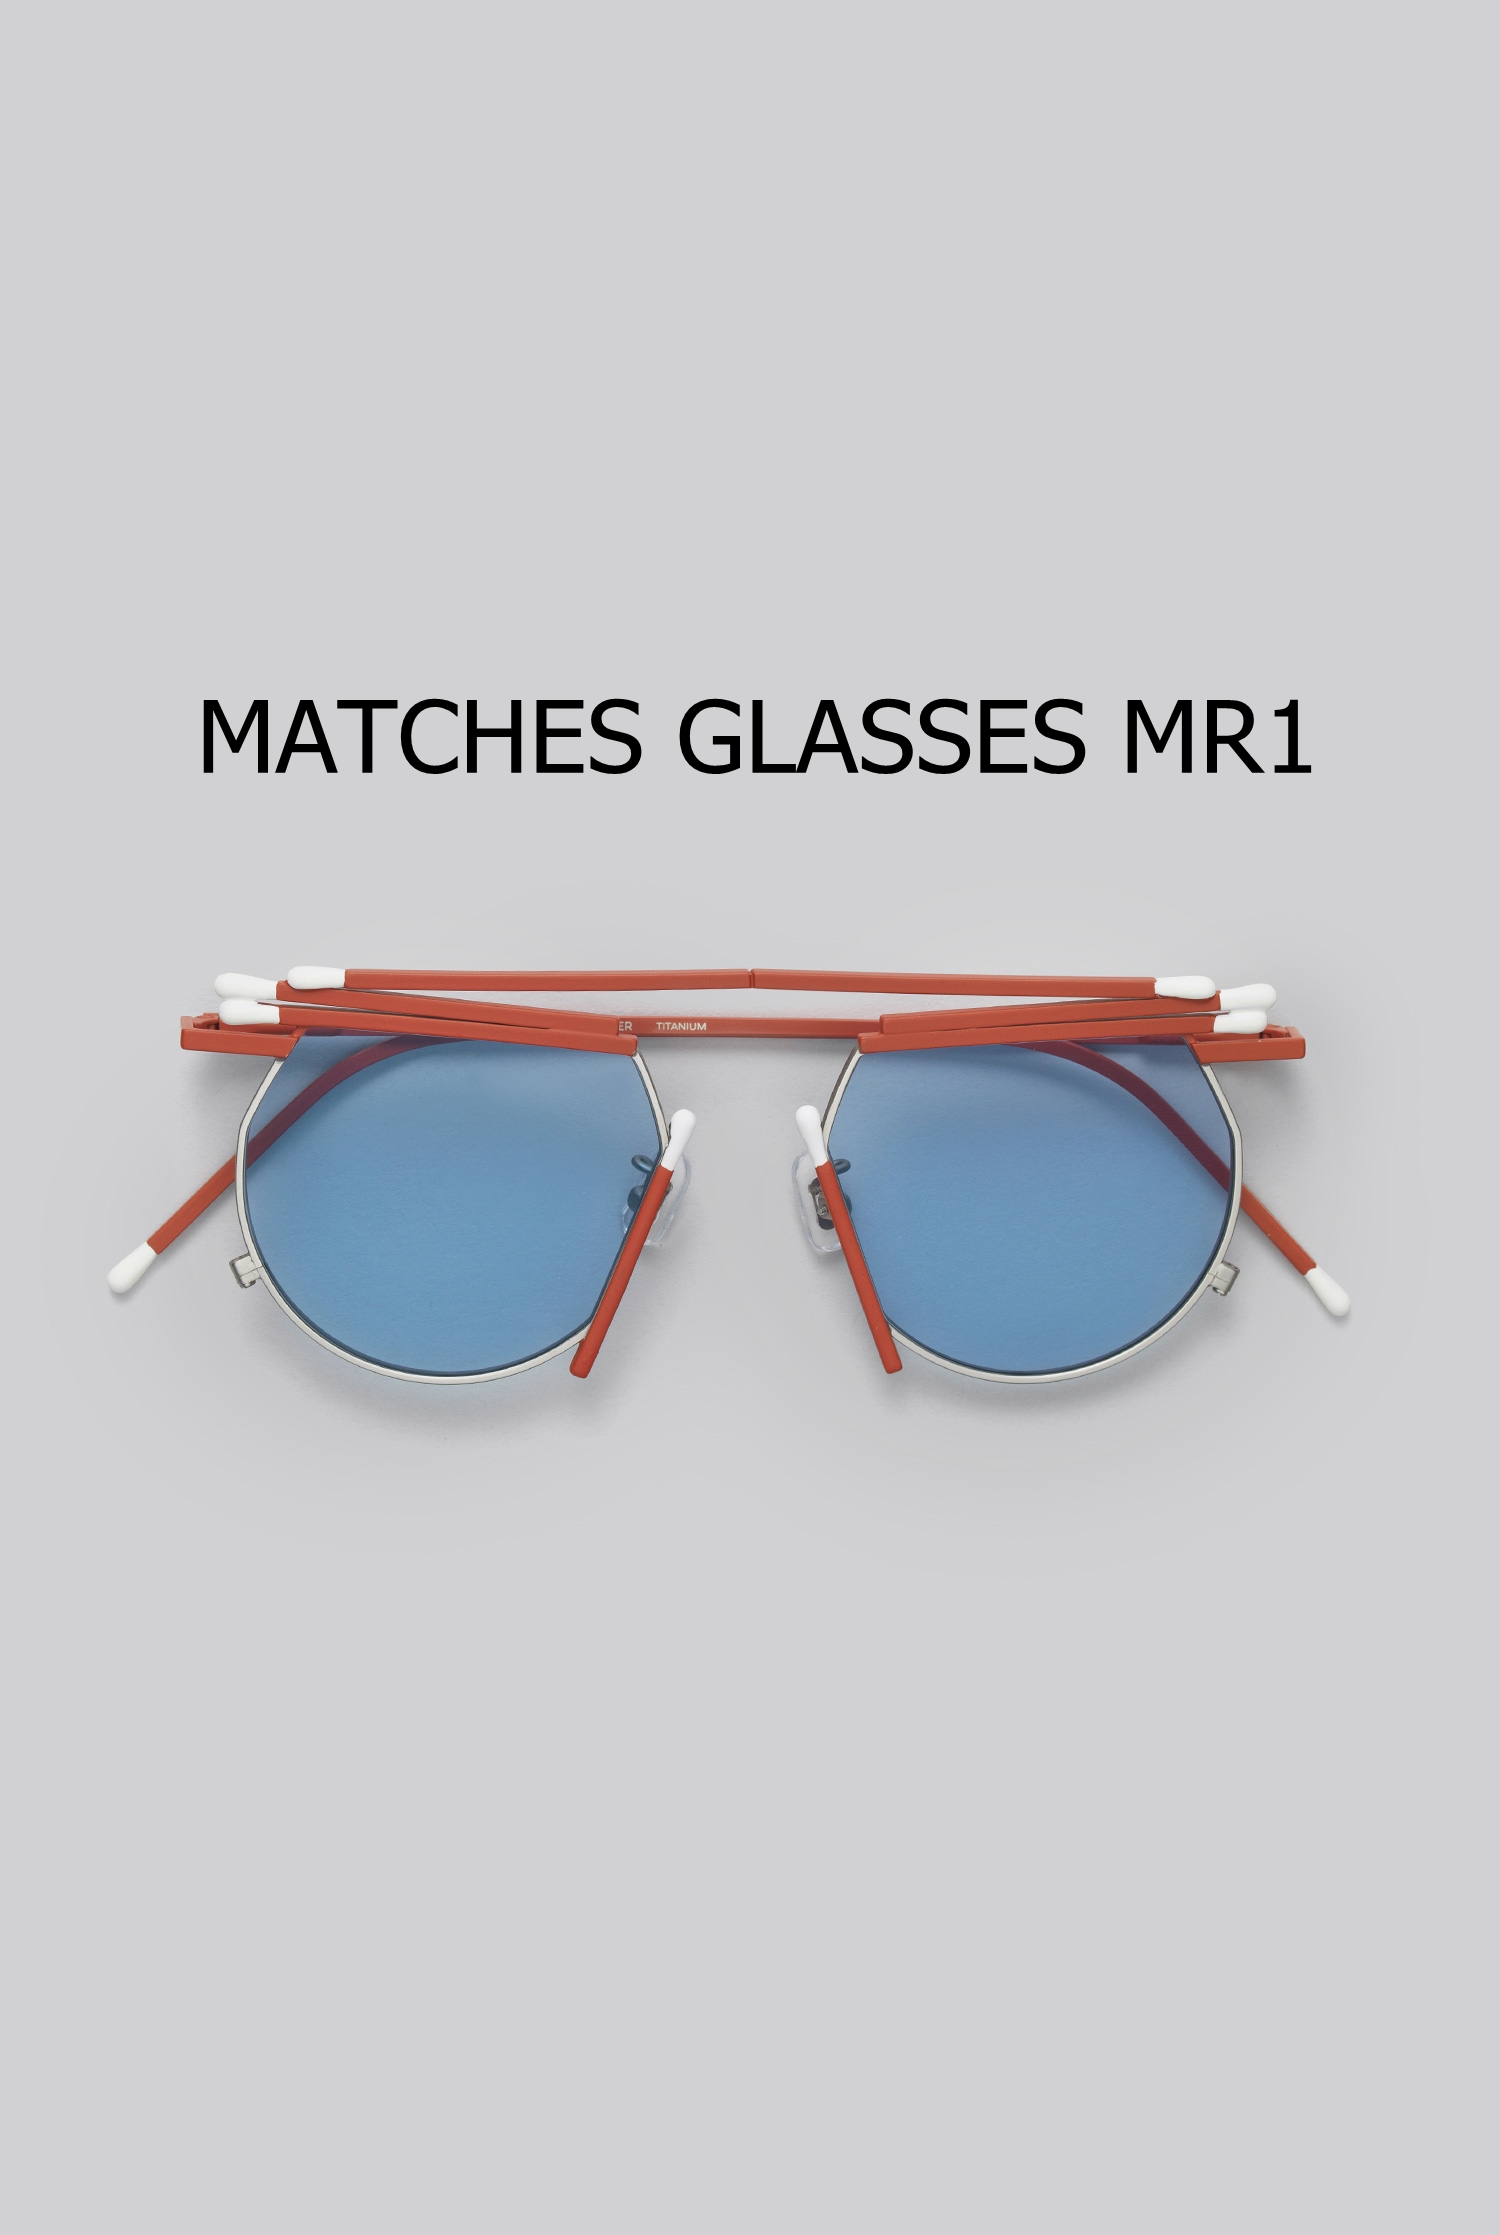 MATCHES GLASSES MR1